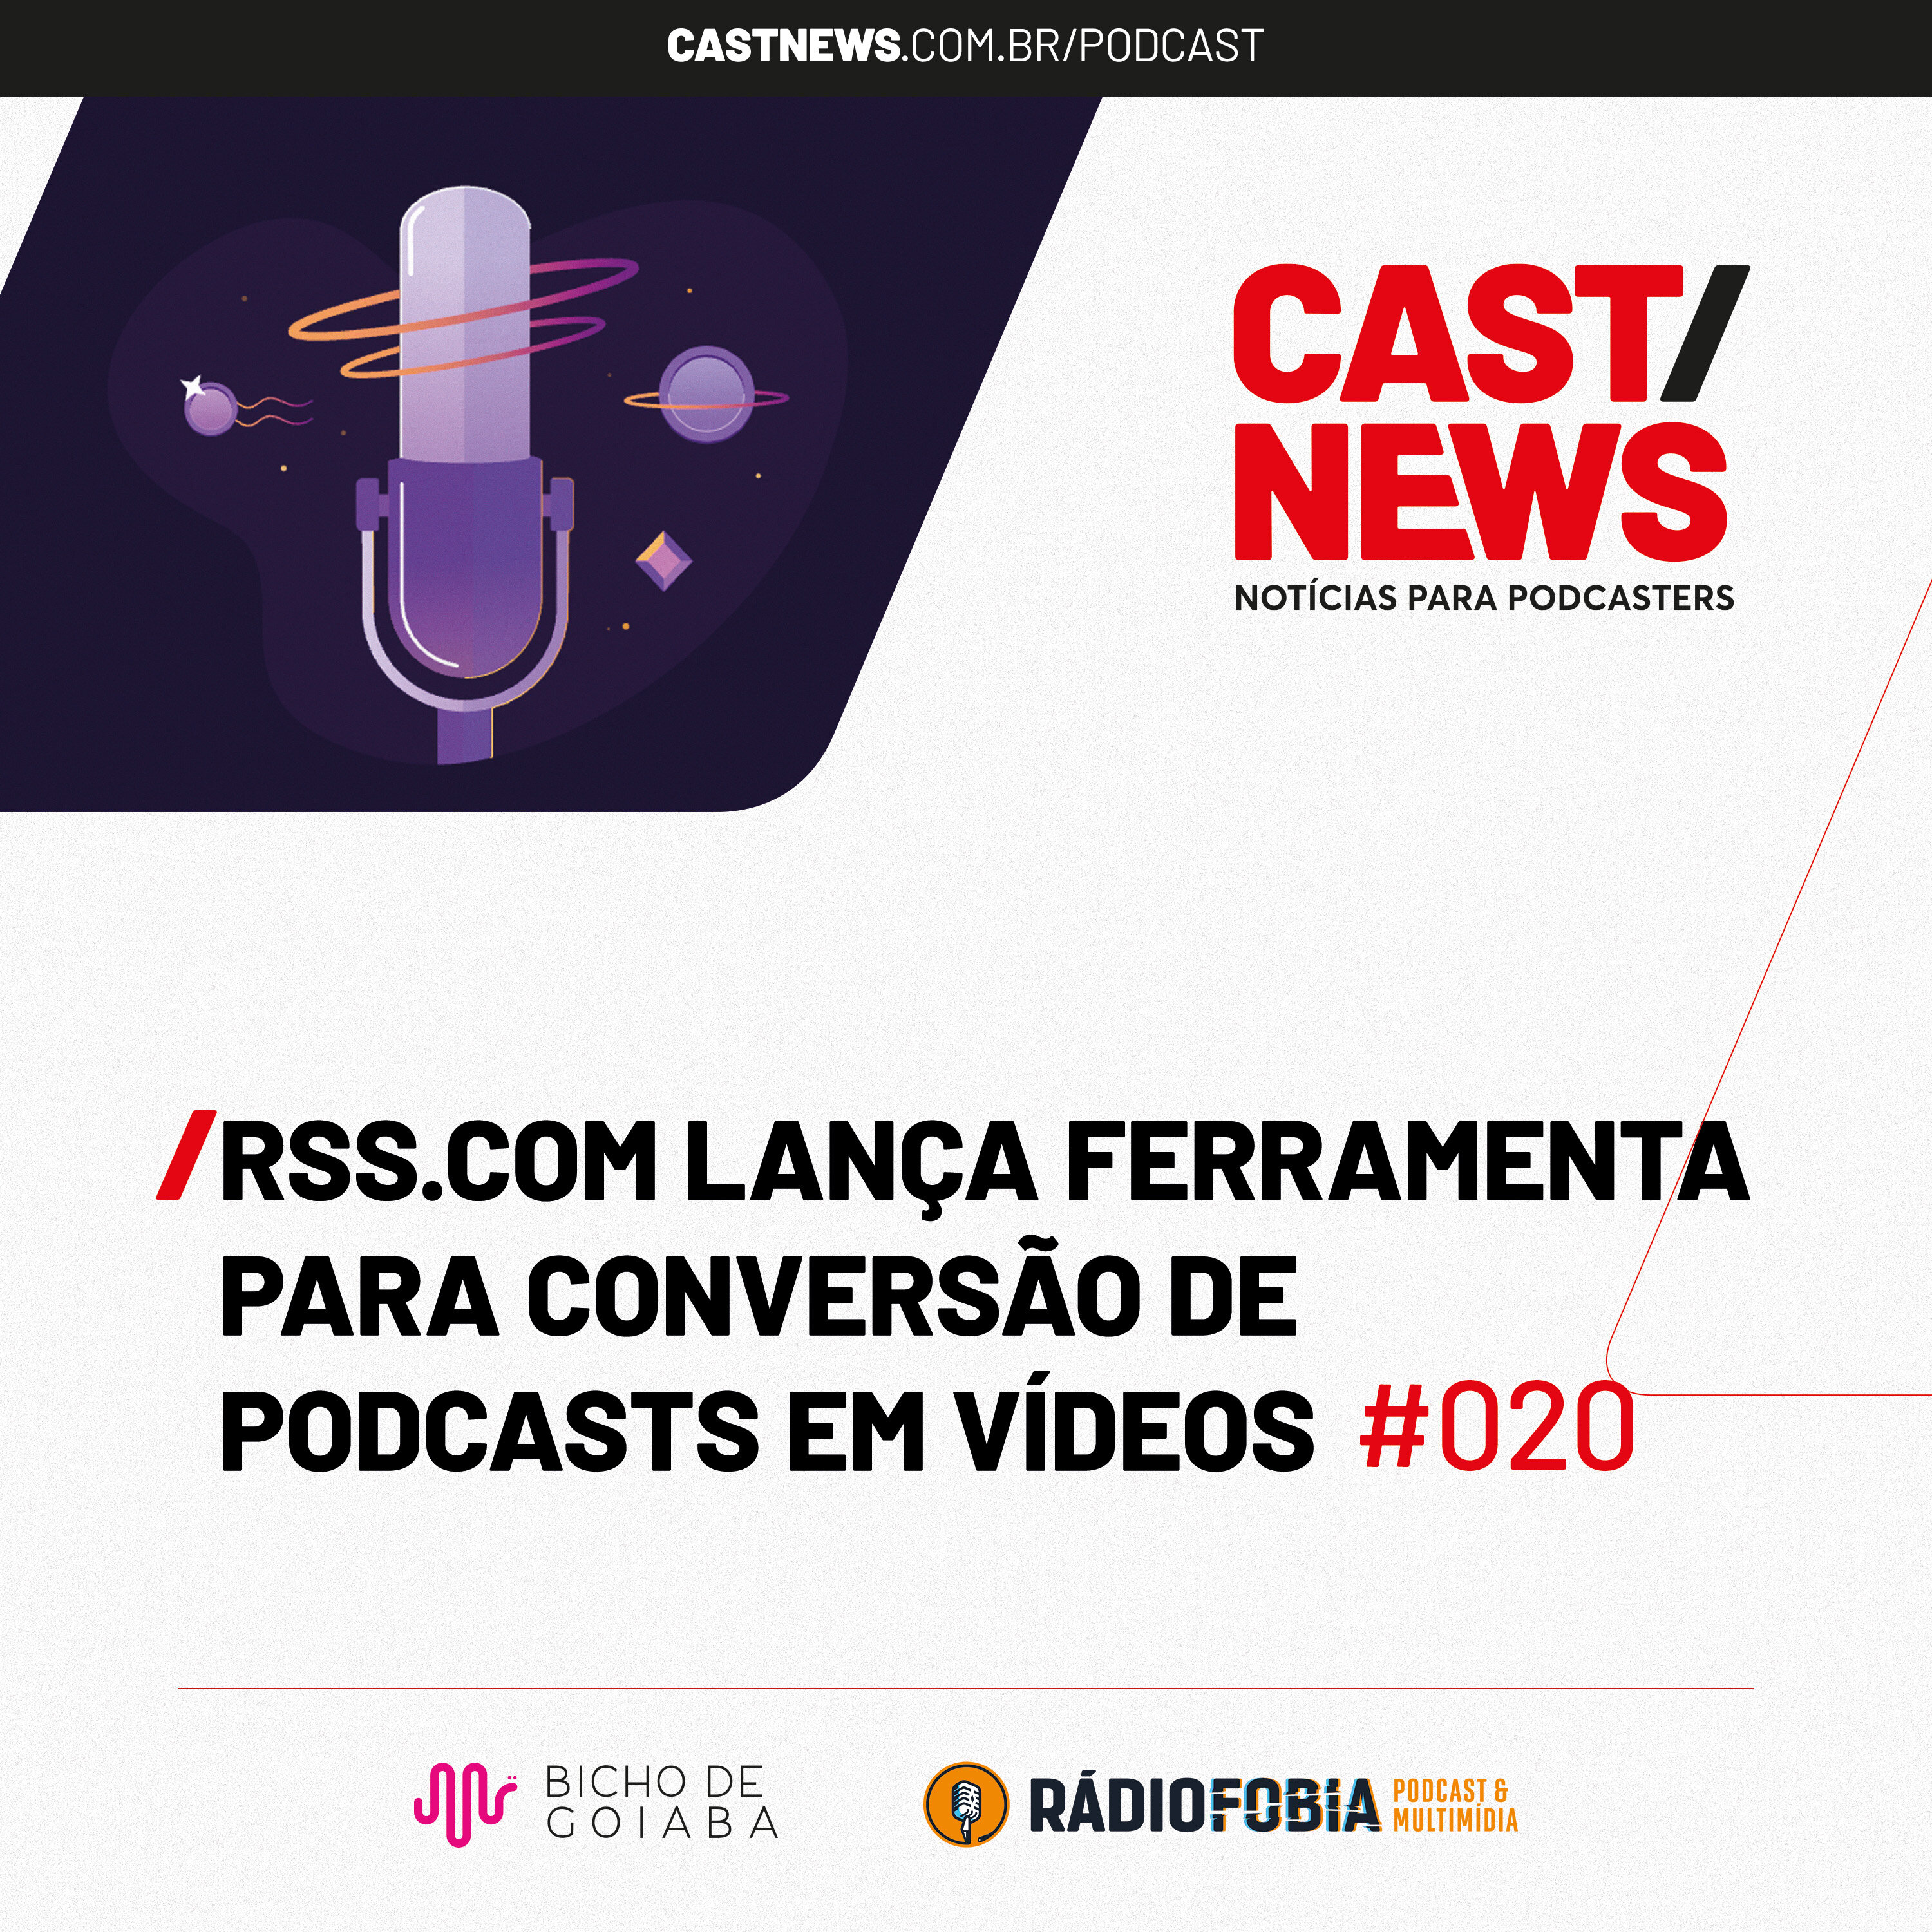 CASTNEWS #020 - RSS.com lança ferramenta para conversão de podcasts em vídeos